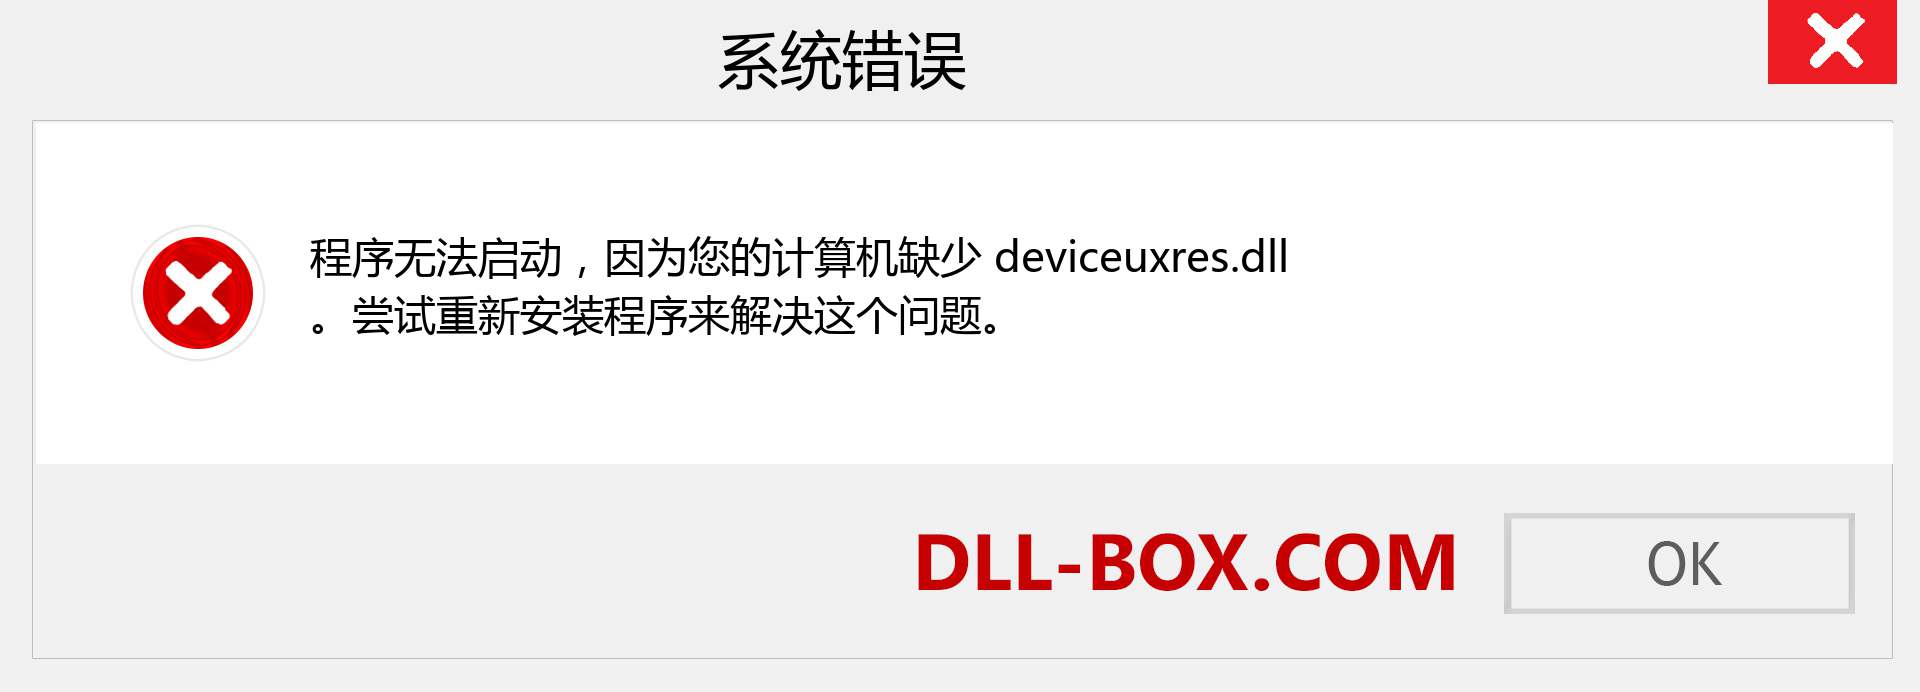 deviceuxres.dll 文件丢失？。 适用于 Windows 7、8、10 的下载 - 修复 Windows、照片、图像上的 deviceuxres dll 丢失错误